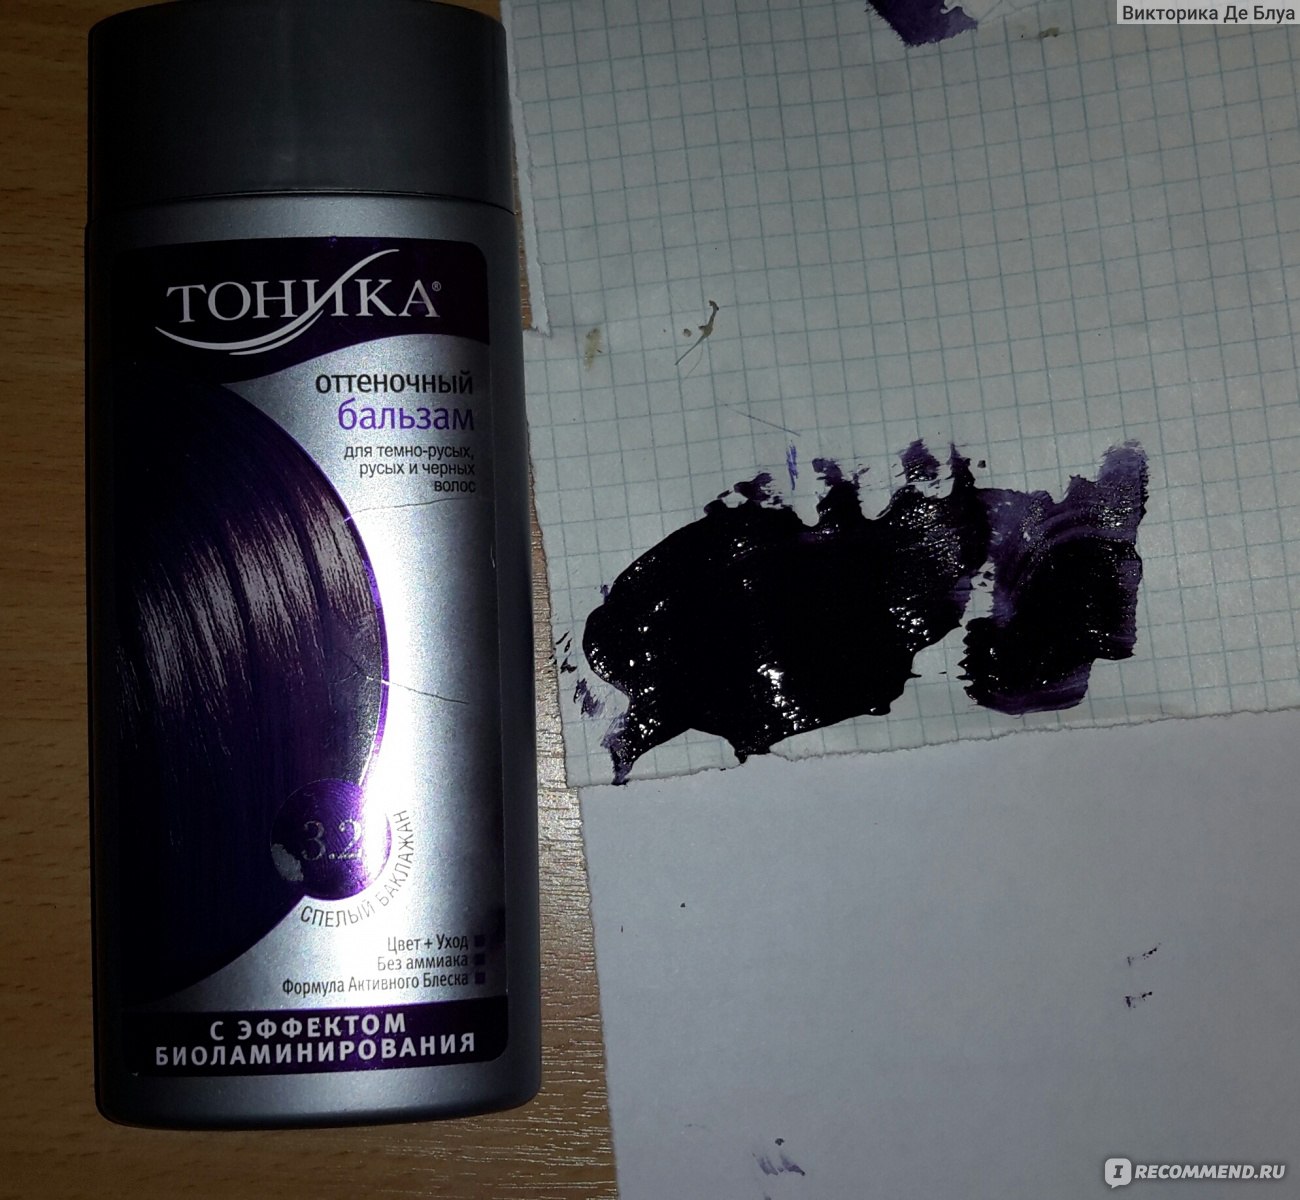 Черный оттеночный шампунь. Оттеночный бальзам тоника 1.0. Оттеночный шампунь фиолетовый для темных волос. Оттеночный бальзам тоника черный. Оттеночный шампунь для волос черный цвет.